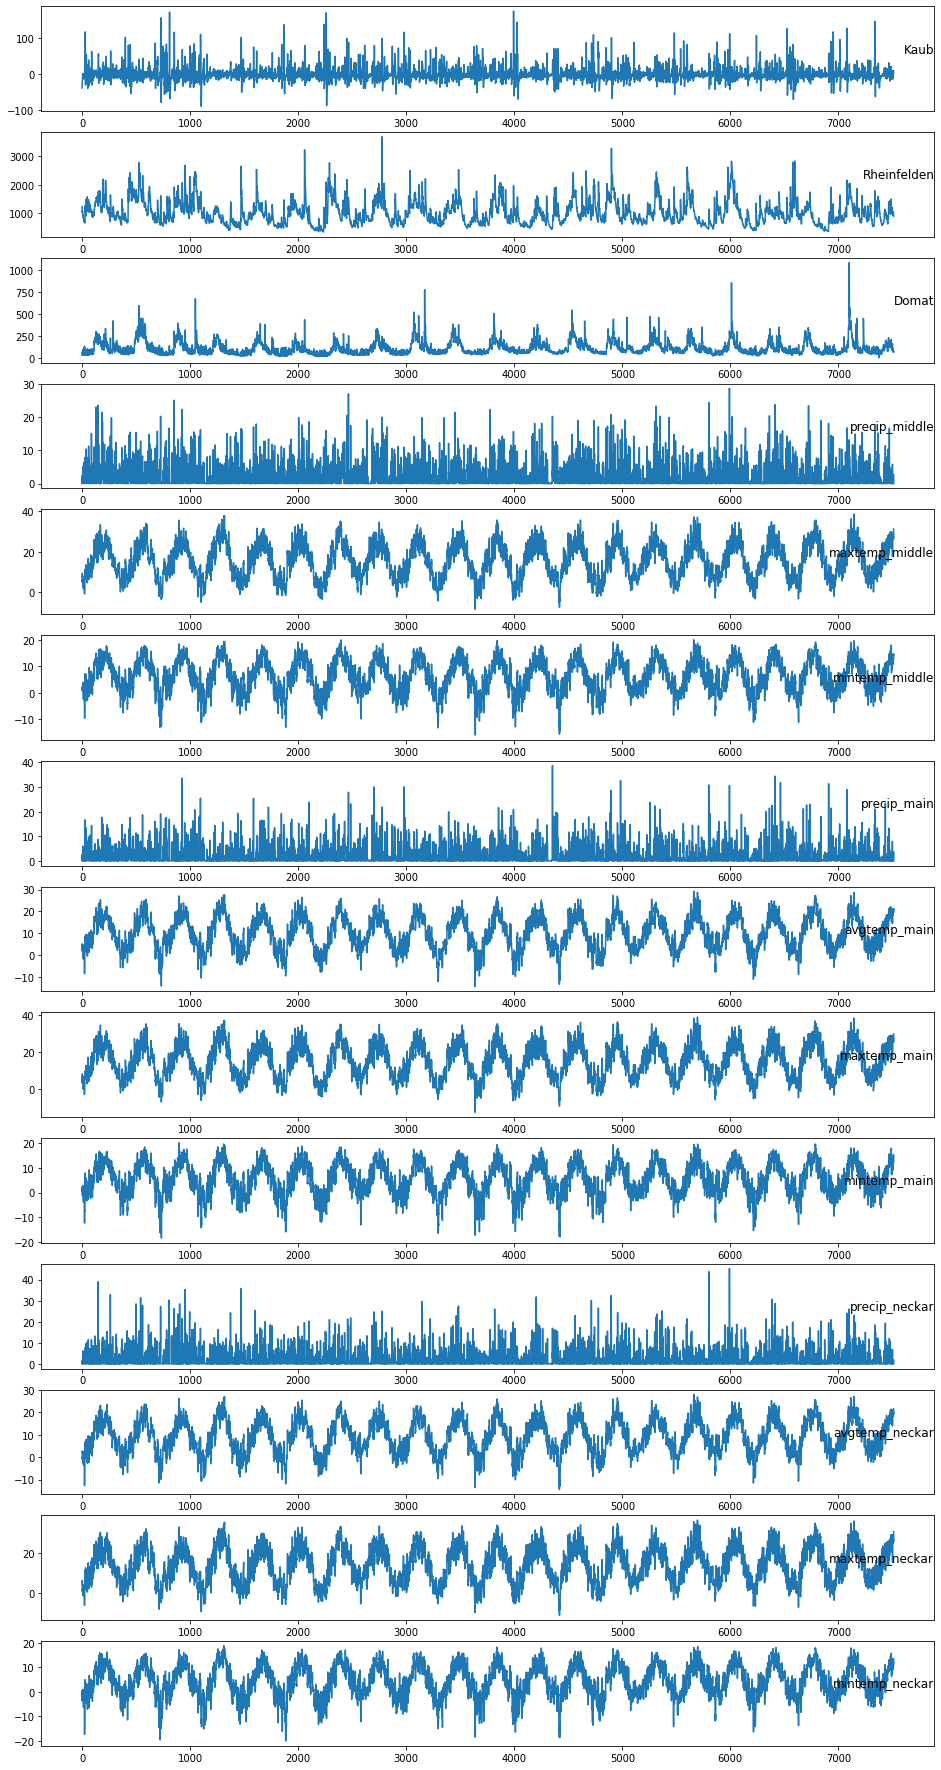 Plot of the major Rhine LSTM dataset variables